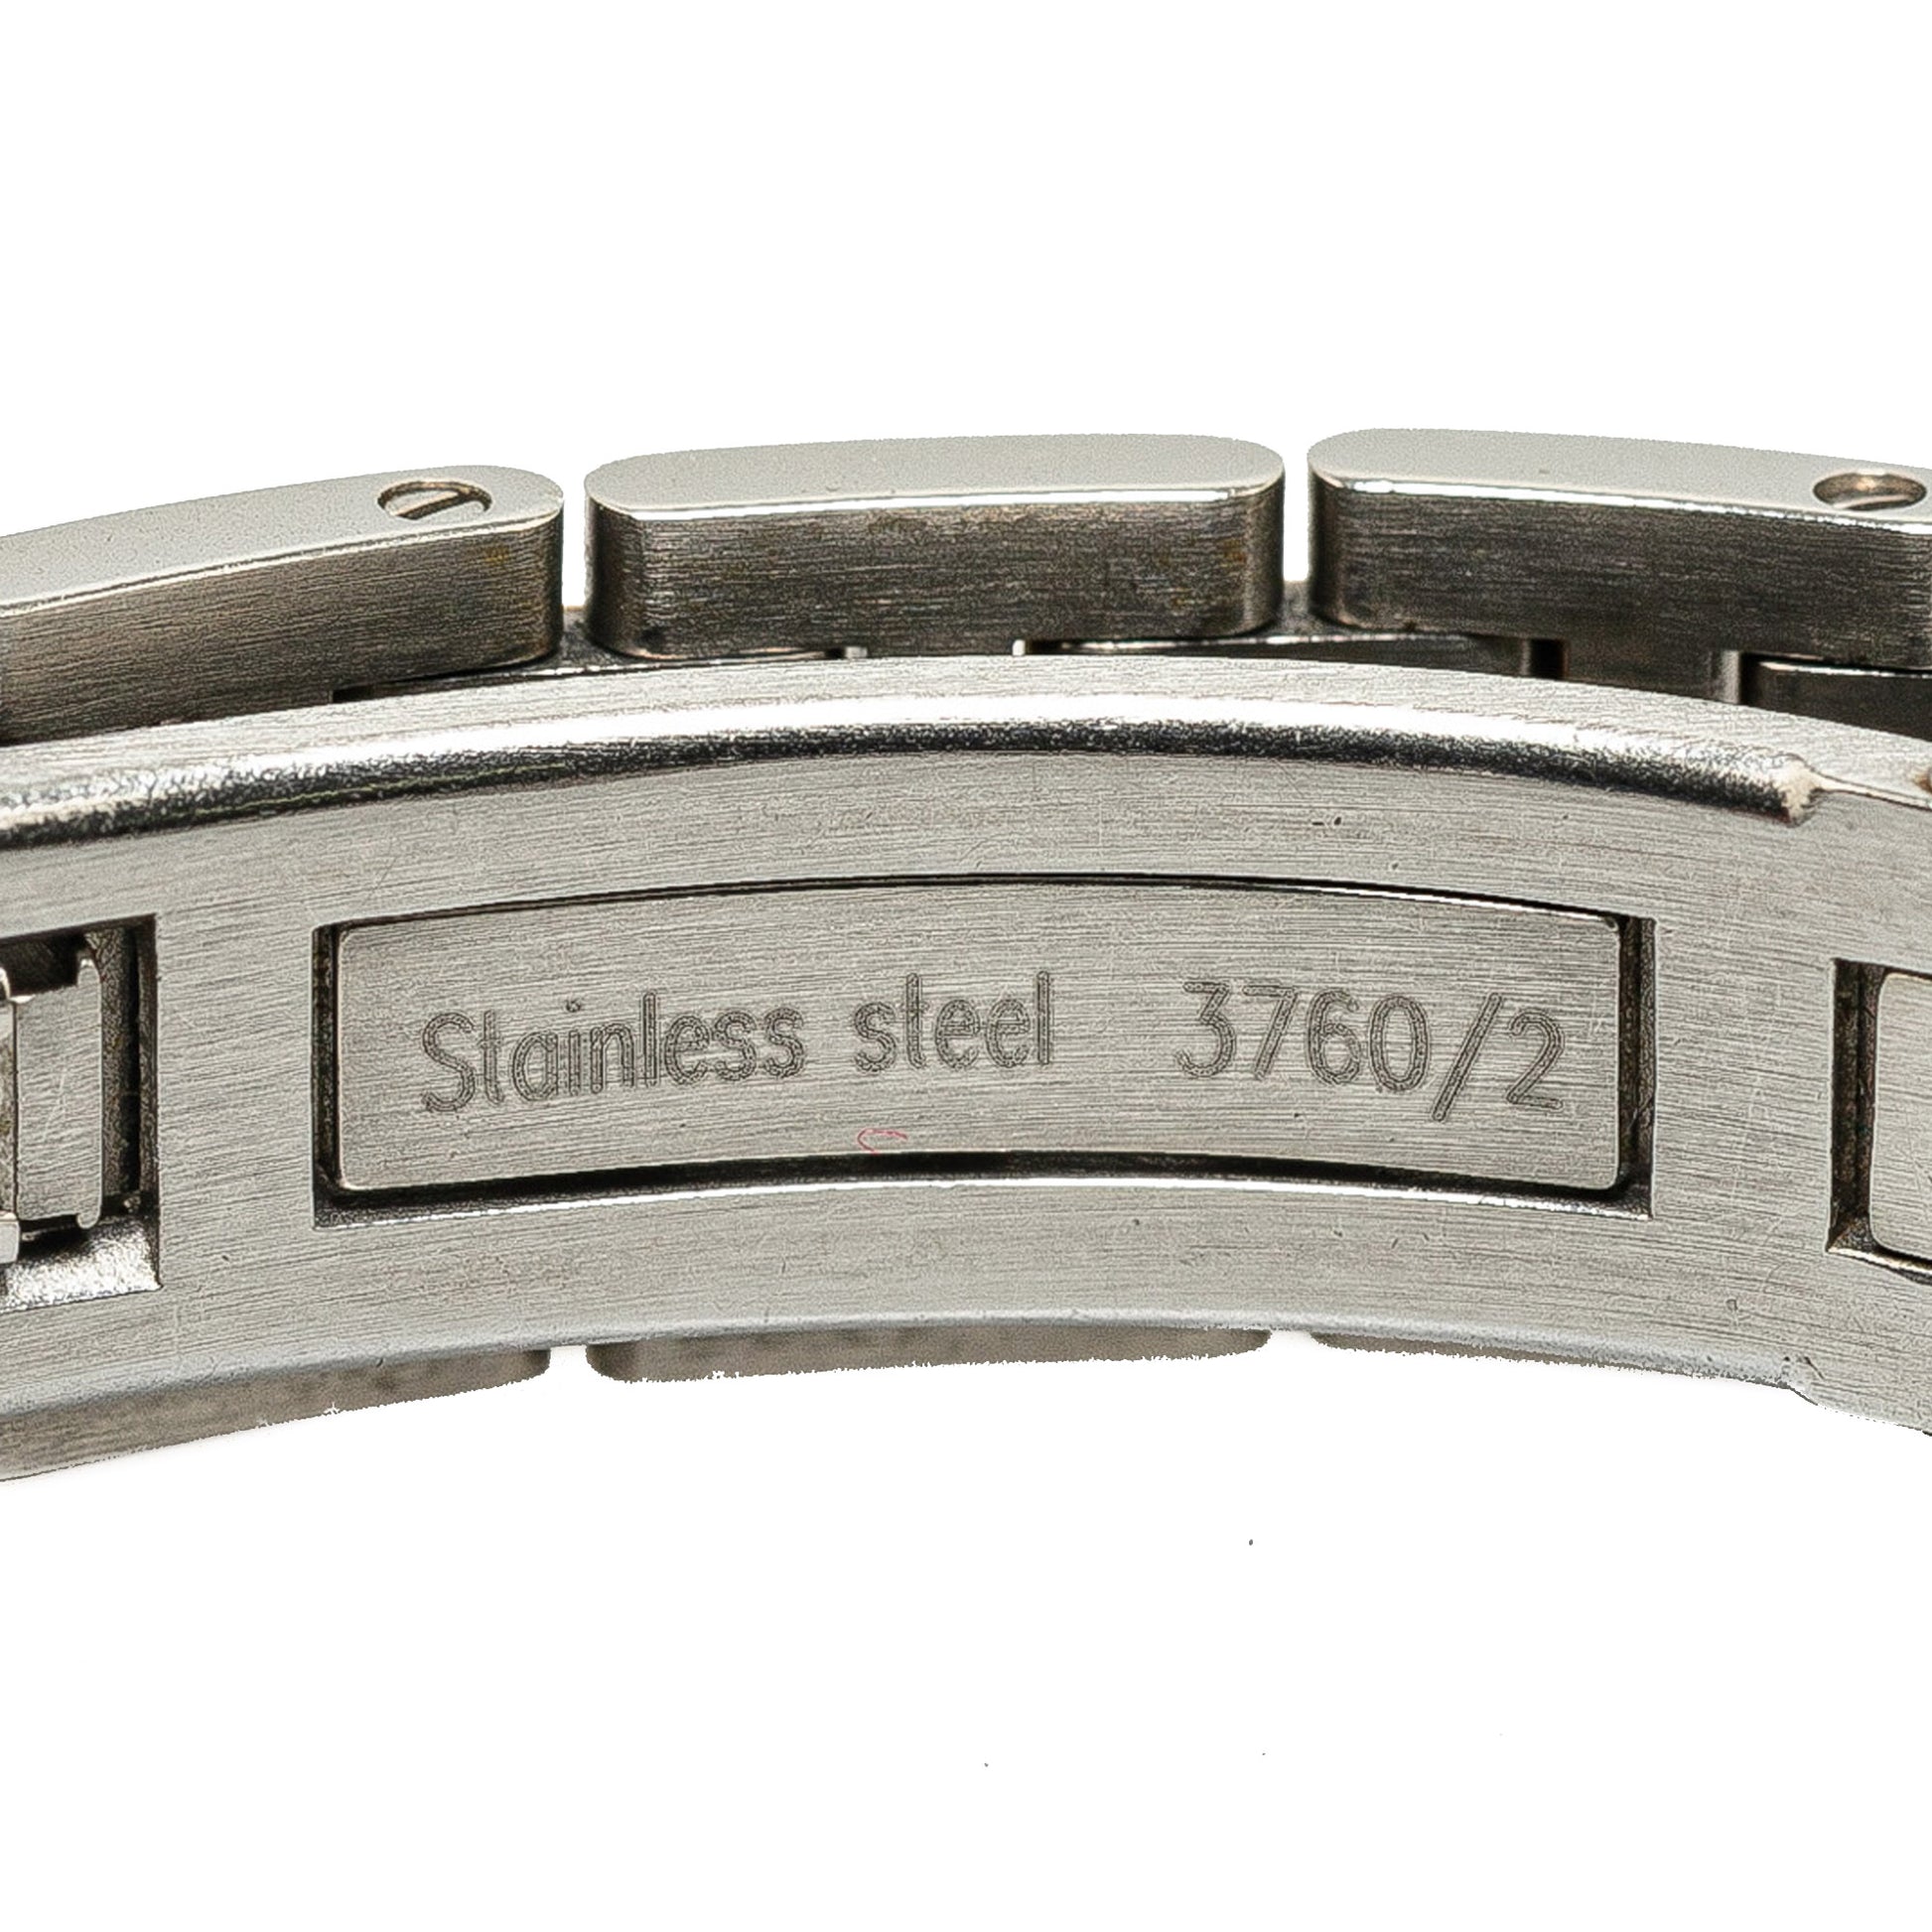 Quartz Stainless Steel Croisiere Watch Silver - Gaby Paris